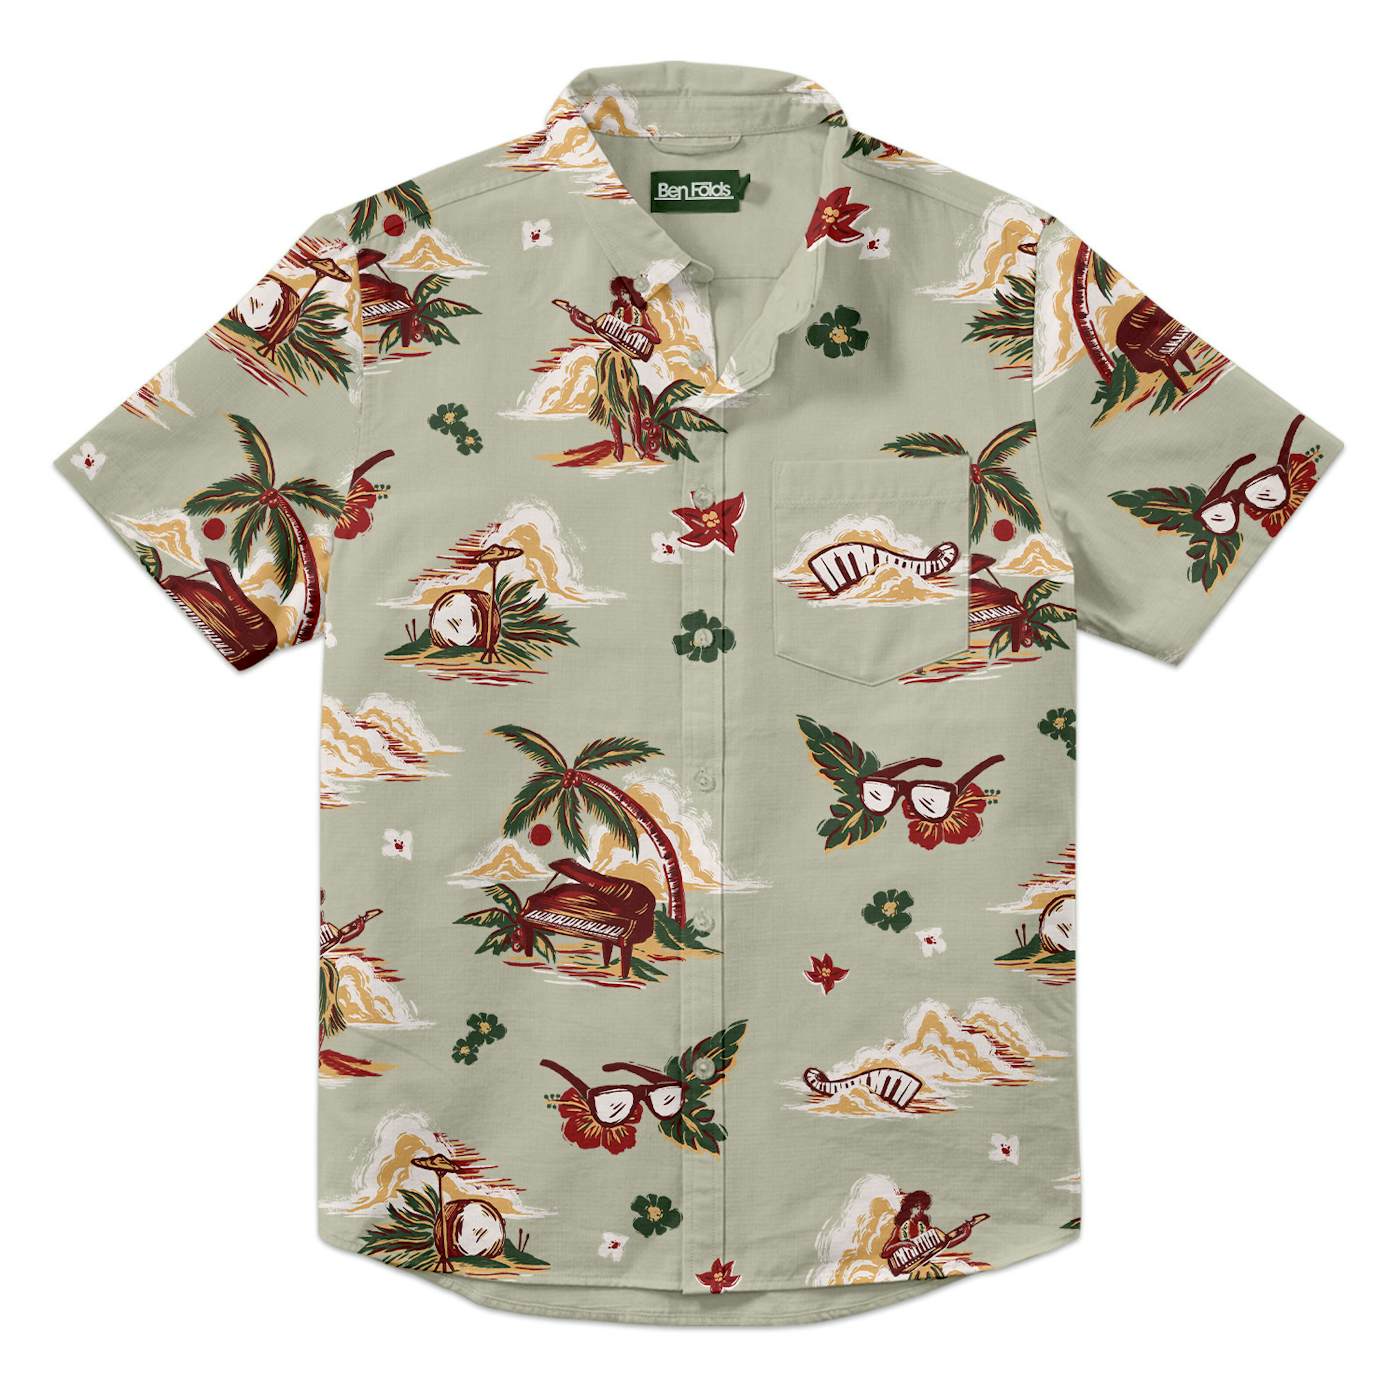 Ben Folds Hawaiian Shirt